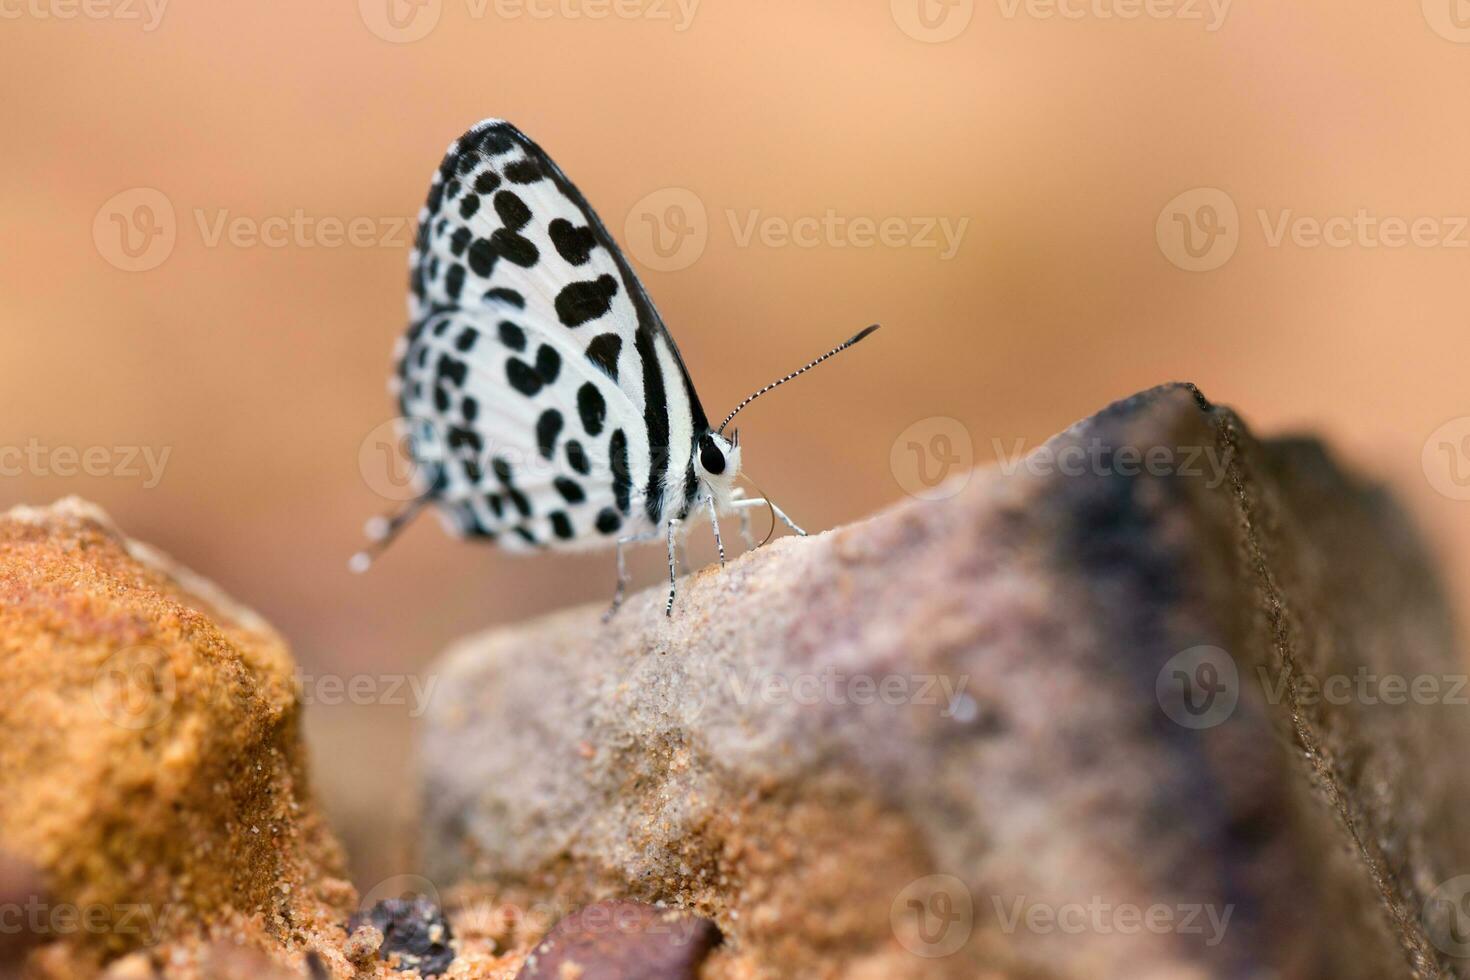 farfalla Comune quacchero mangiato minerale su sabbia. foto